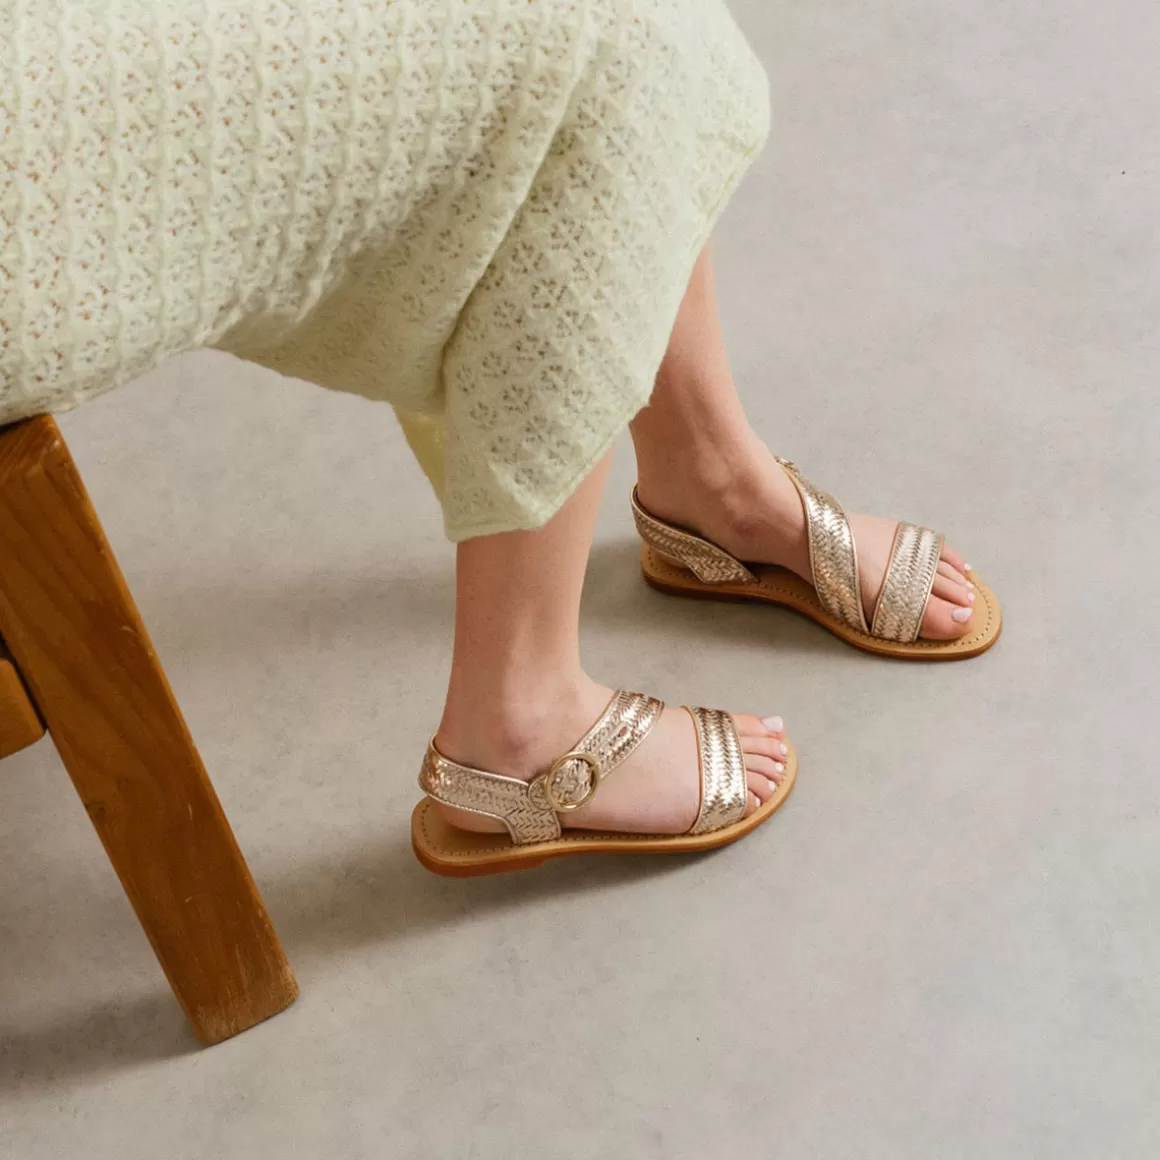 Asymmetric sandals<Jonak Clearance